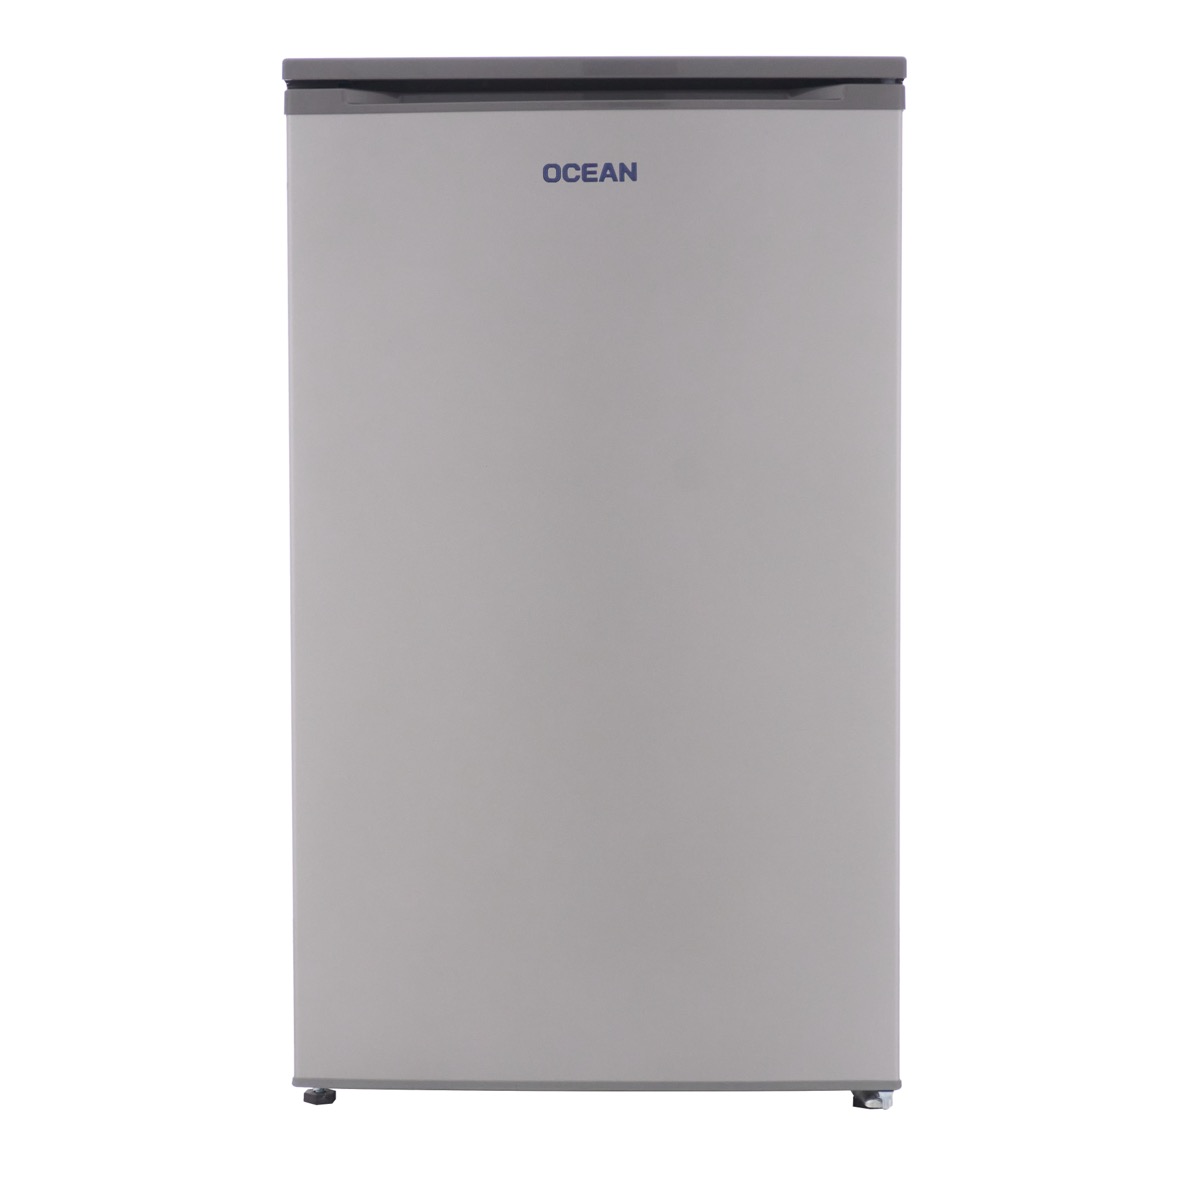 Ocean Freestanding Minibar Defrost Refrigerator, 84 Liters, Silver - OCM-90-TS-A